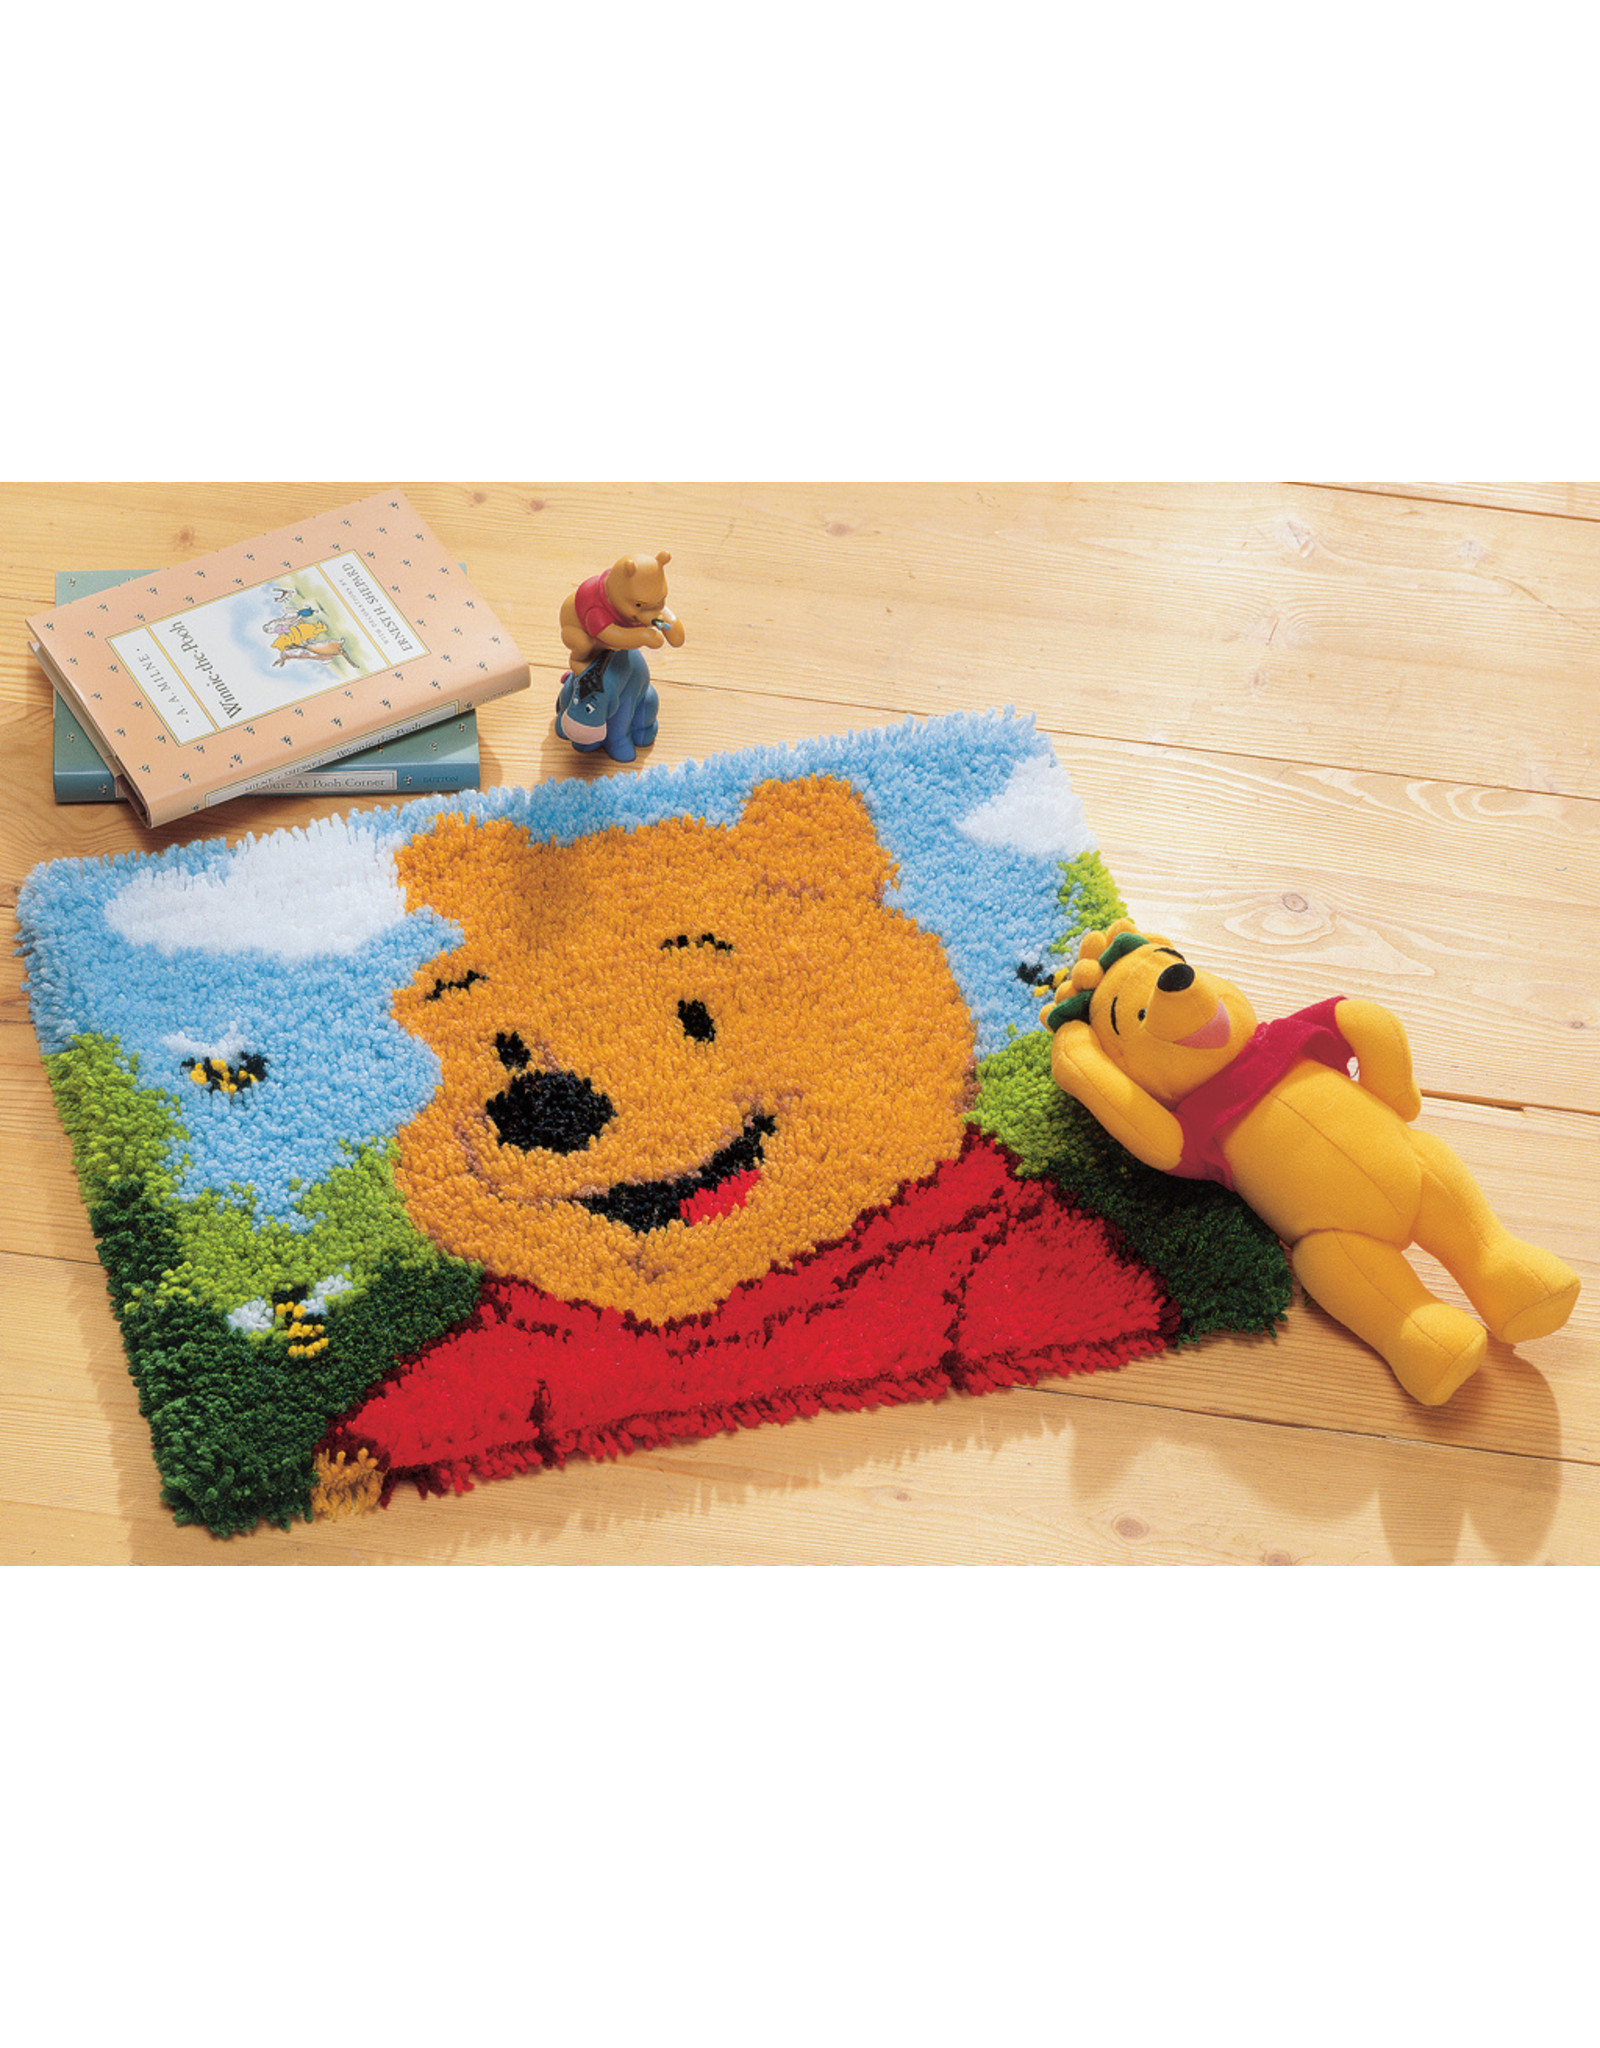 Vervaco Vervaco knooppakket/Smyrna tapijt Winnie the Pooh